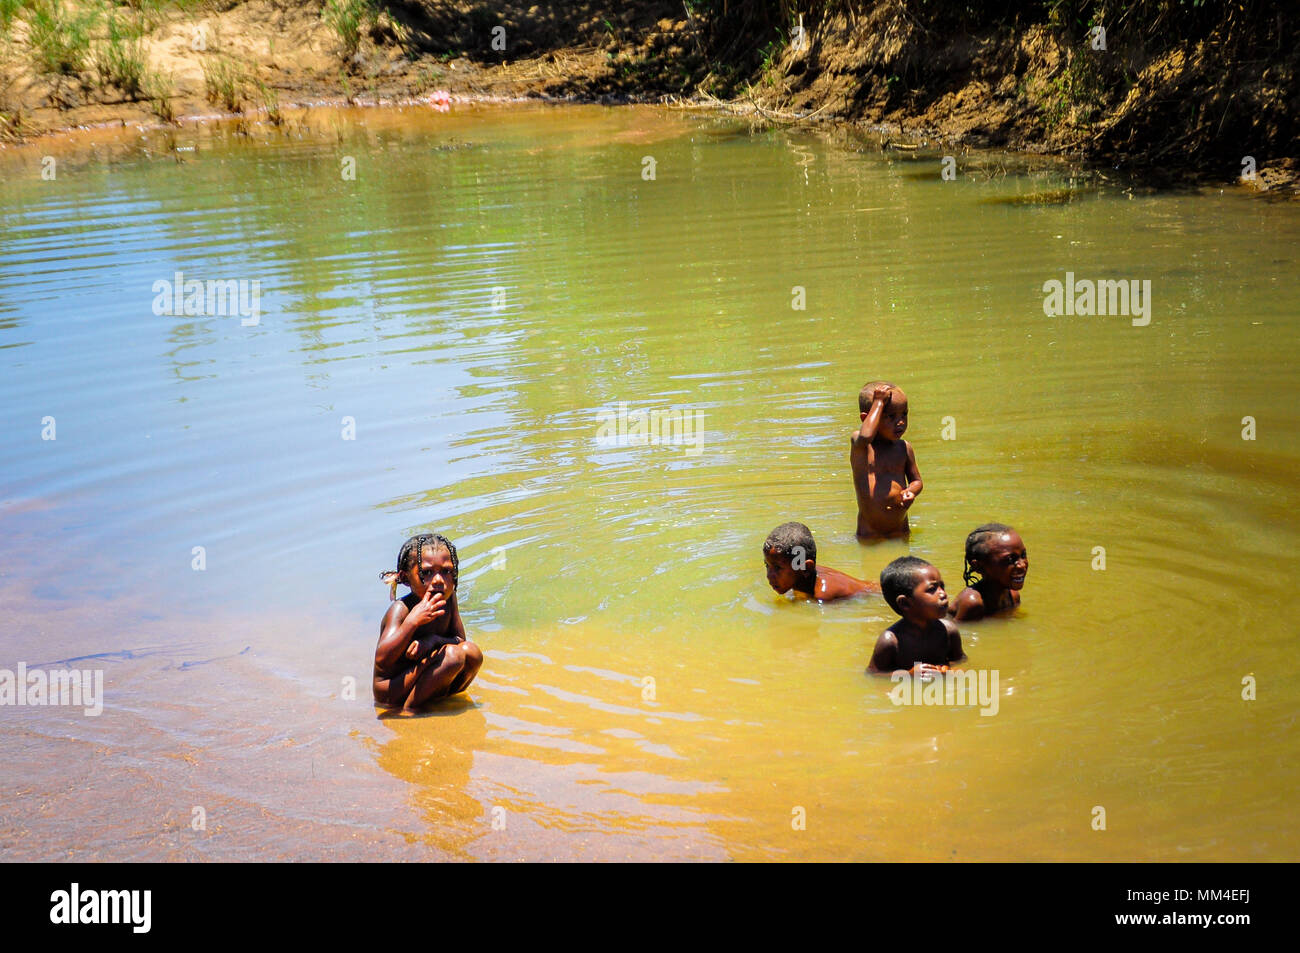 Einige unbekannte Kinder spielen in einem Teich schmutziges Wasser. Madagaskar ist eines der ärmsten Länder der Erde Stockfoto